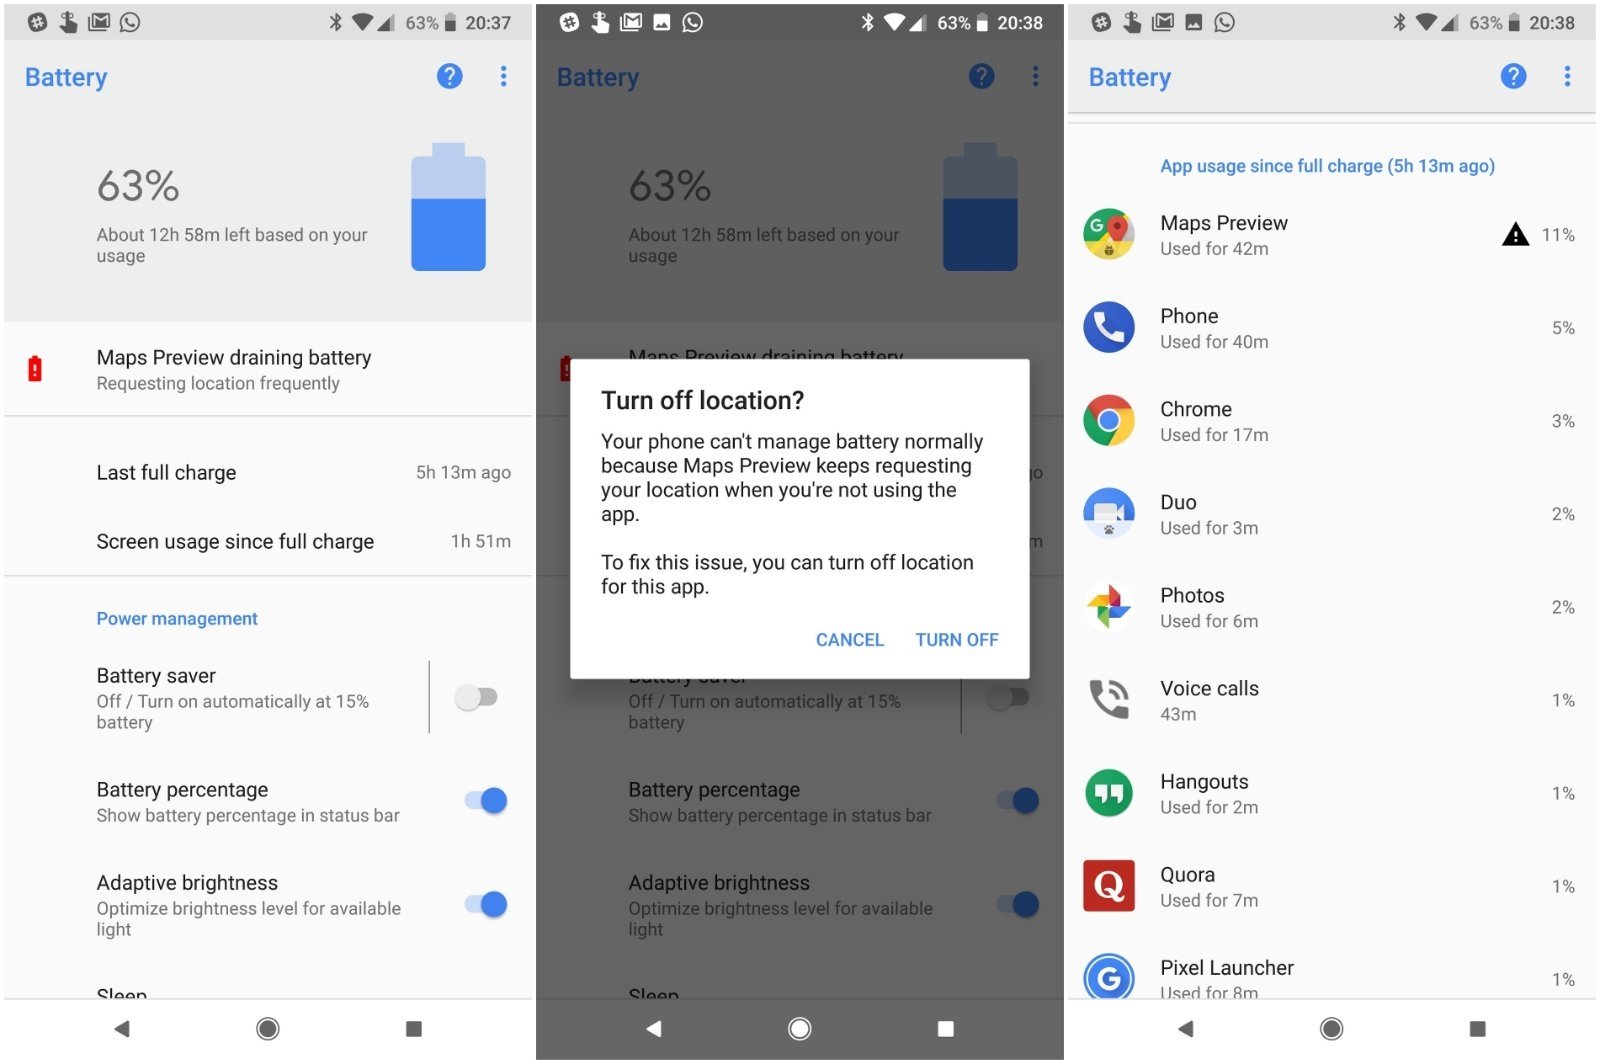 Consumo batería excesiva Android 8.1 Dev Preview